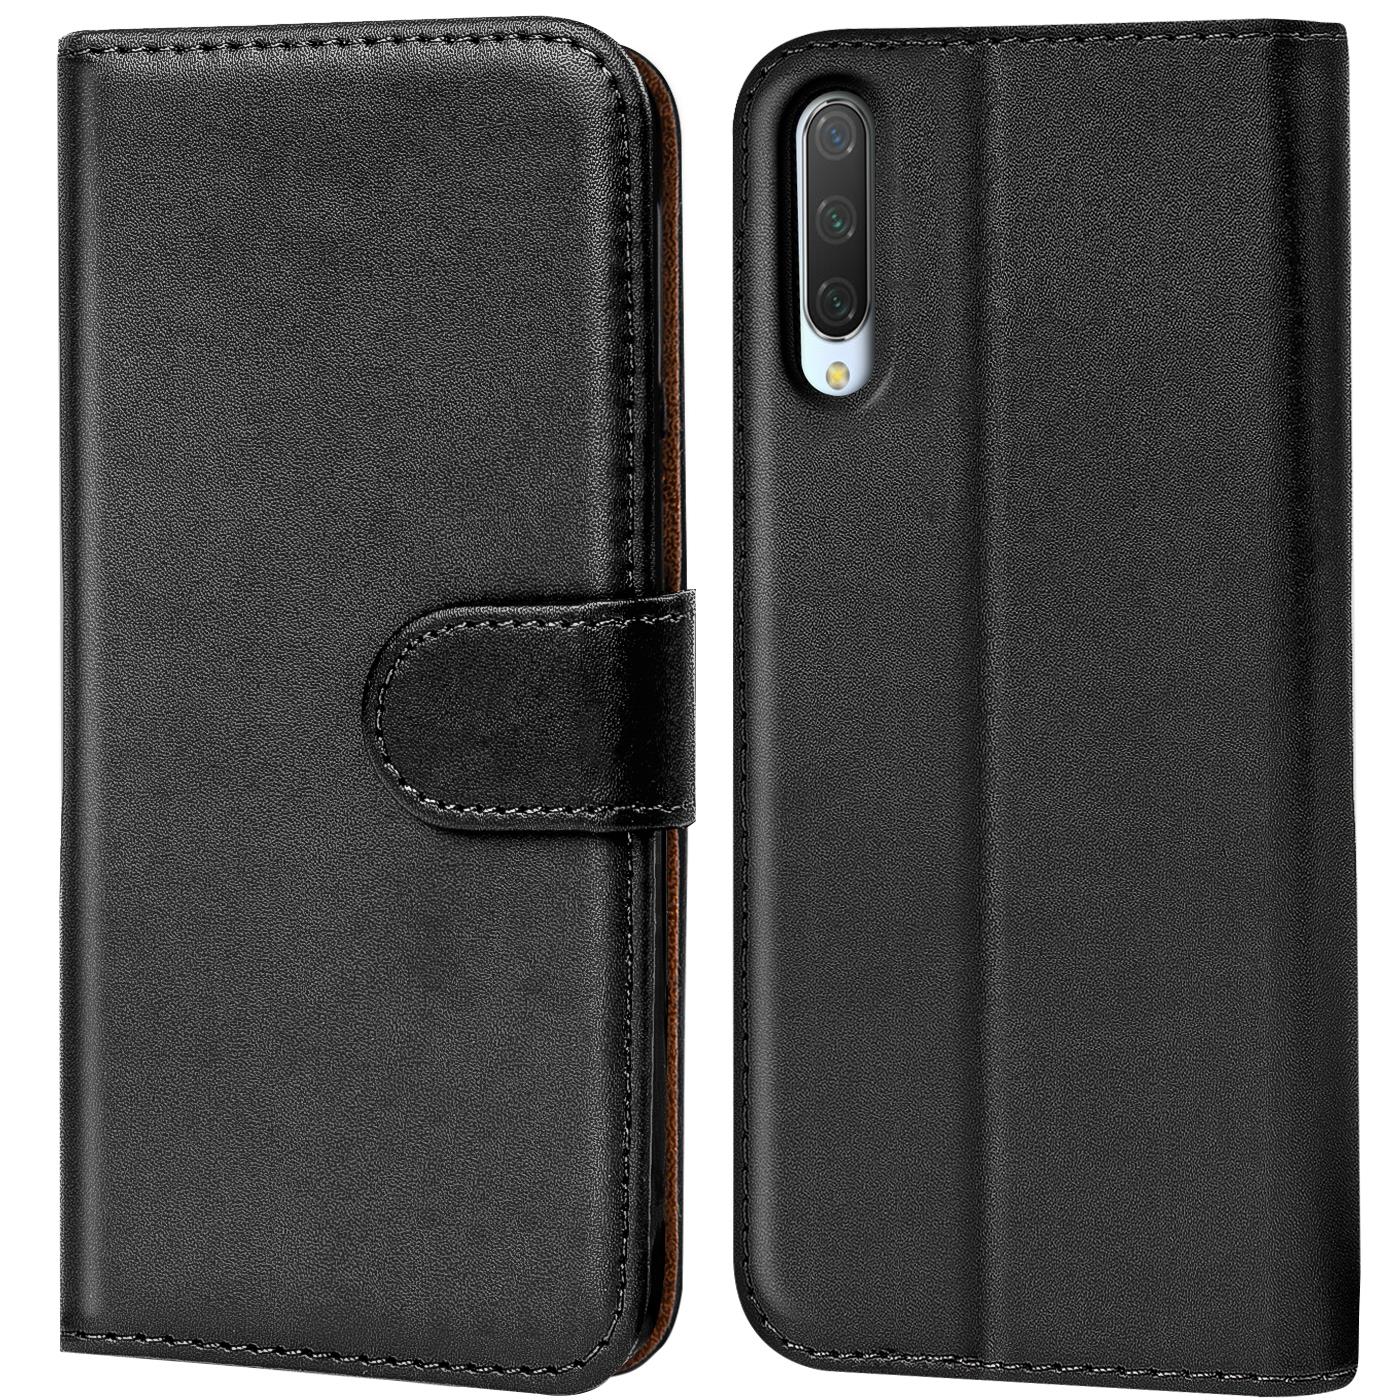 Indexbild 22 - Schutz Hülle Für Xiaomi Mi Handy Tasche Flip Case Cover Wallet Book Hülle Etui